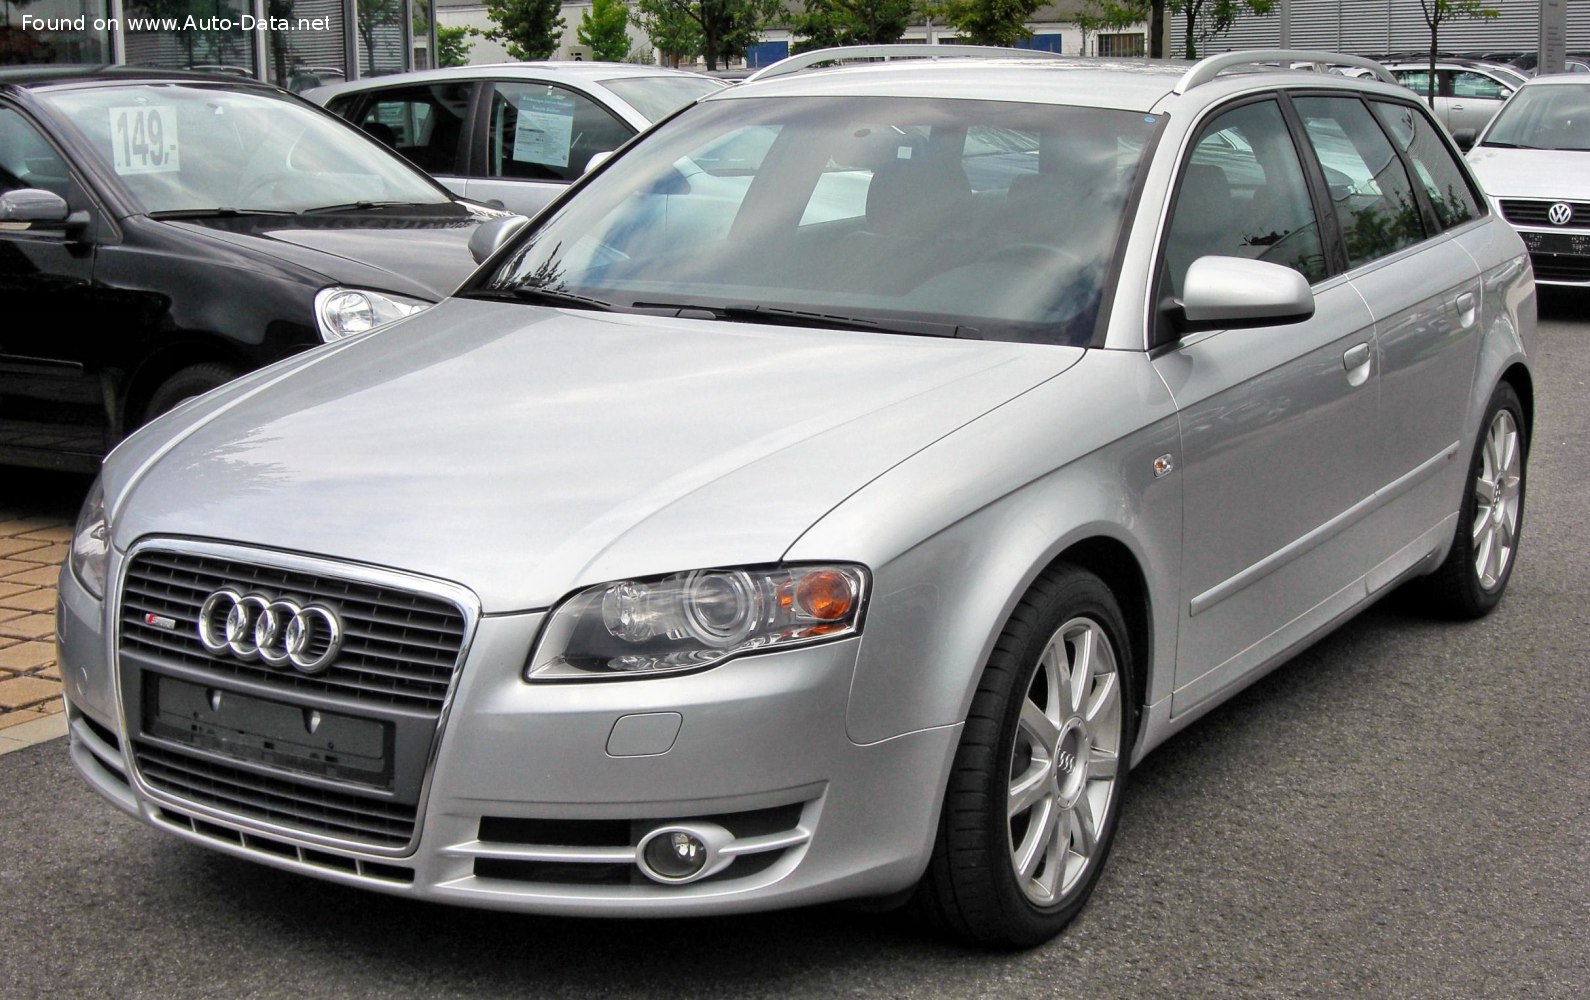 File:Audi A4 B7 Avant 2.0 TDI.JPG - Wikipedia